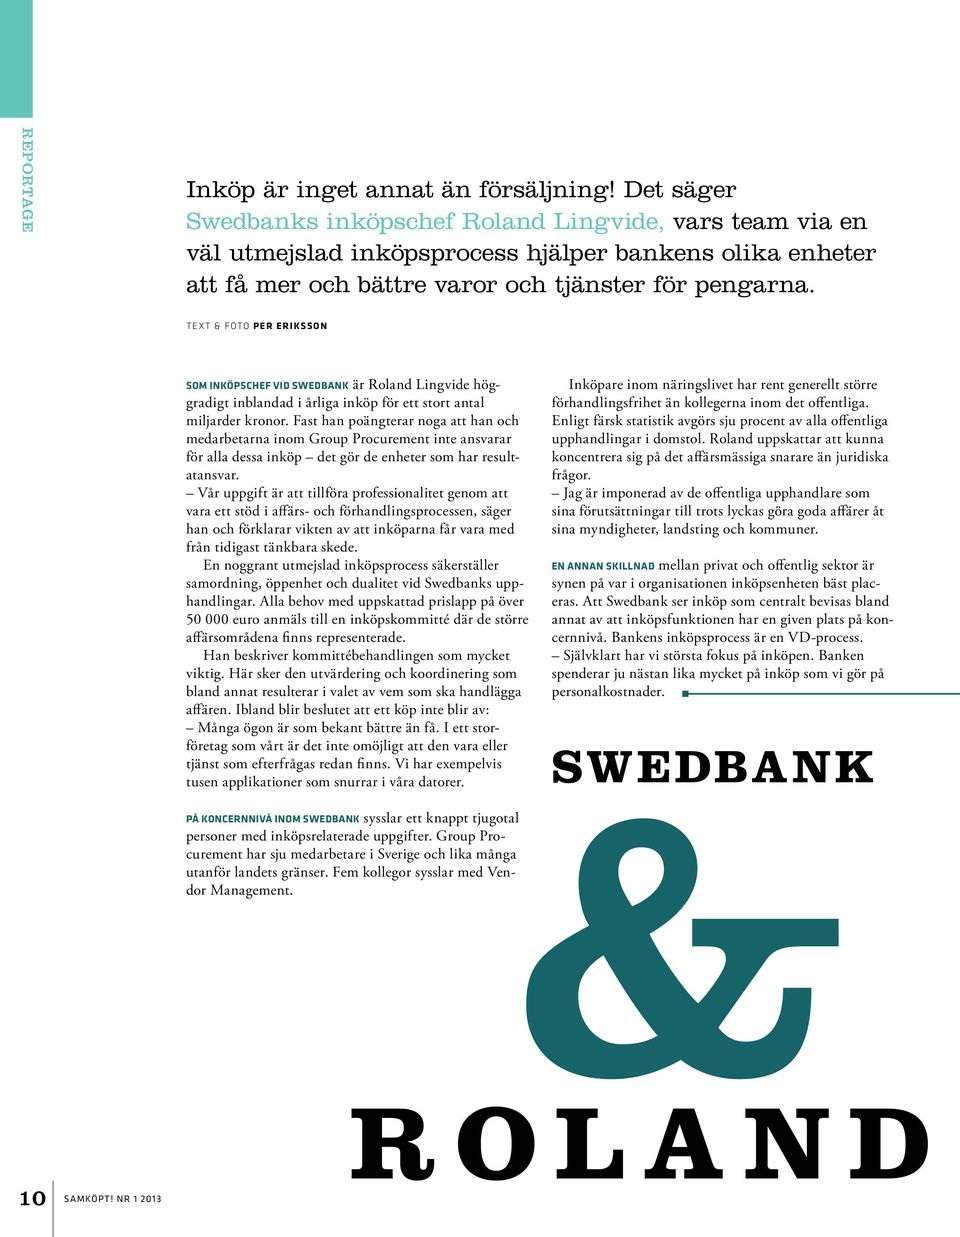 Text & FOTO PER ERIKSSON SOM INKÖPSCHEF VID SWEDBANK är Roland Lingvide höggradigt inblandad i årliga inköp för ett stort antal miljarder kronor.